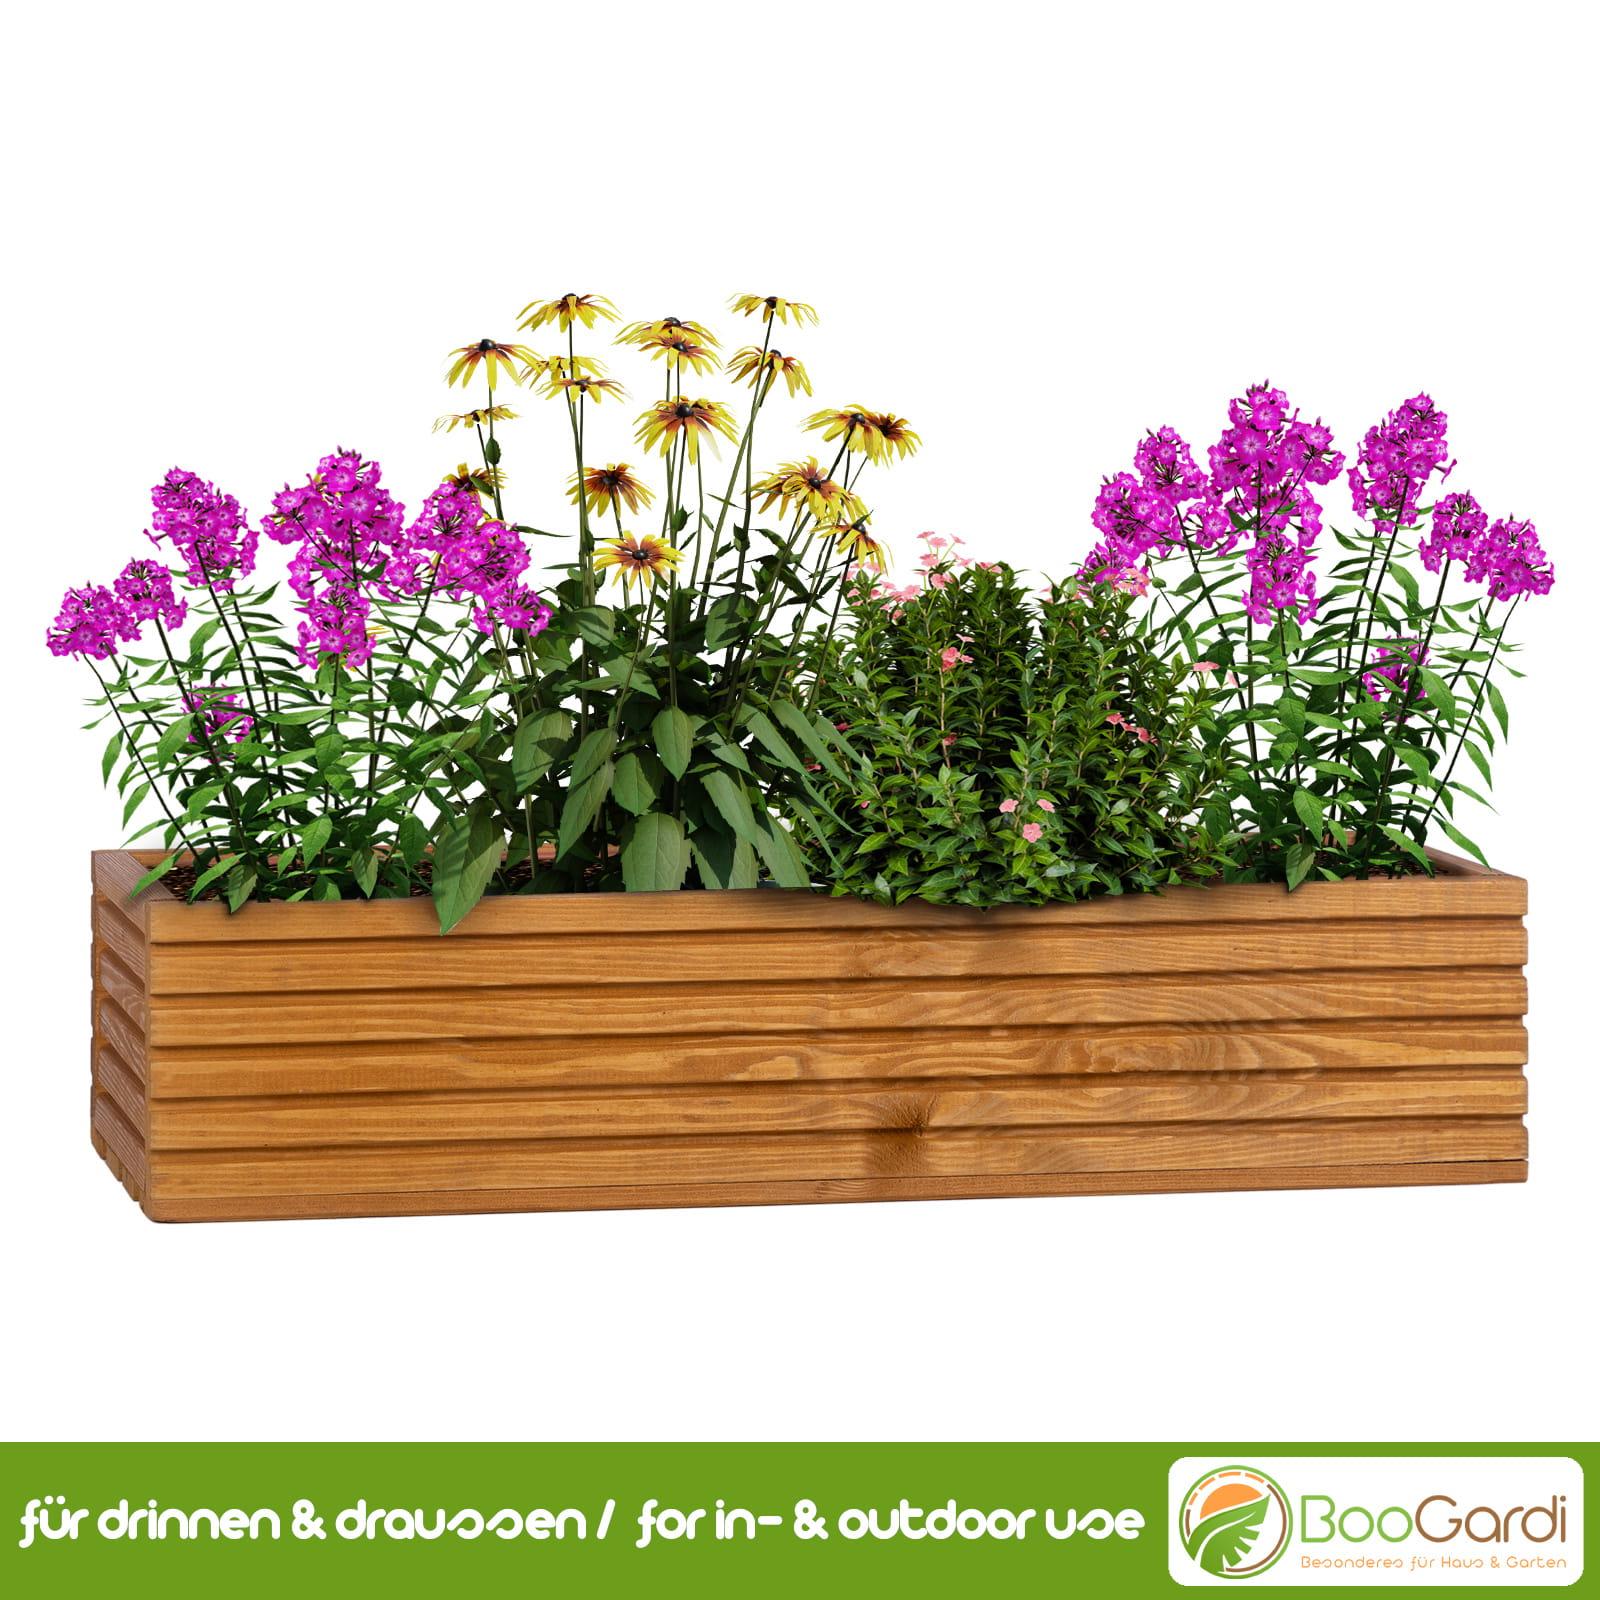 Blumenkasten mit Kunststoffeinsatz | BooGardi - Haus & Garten